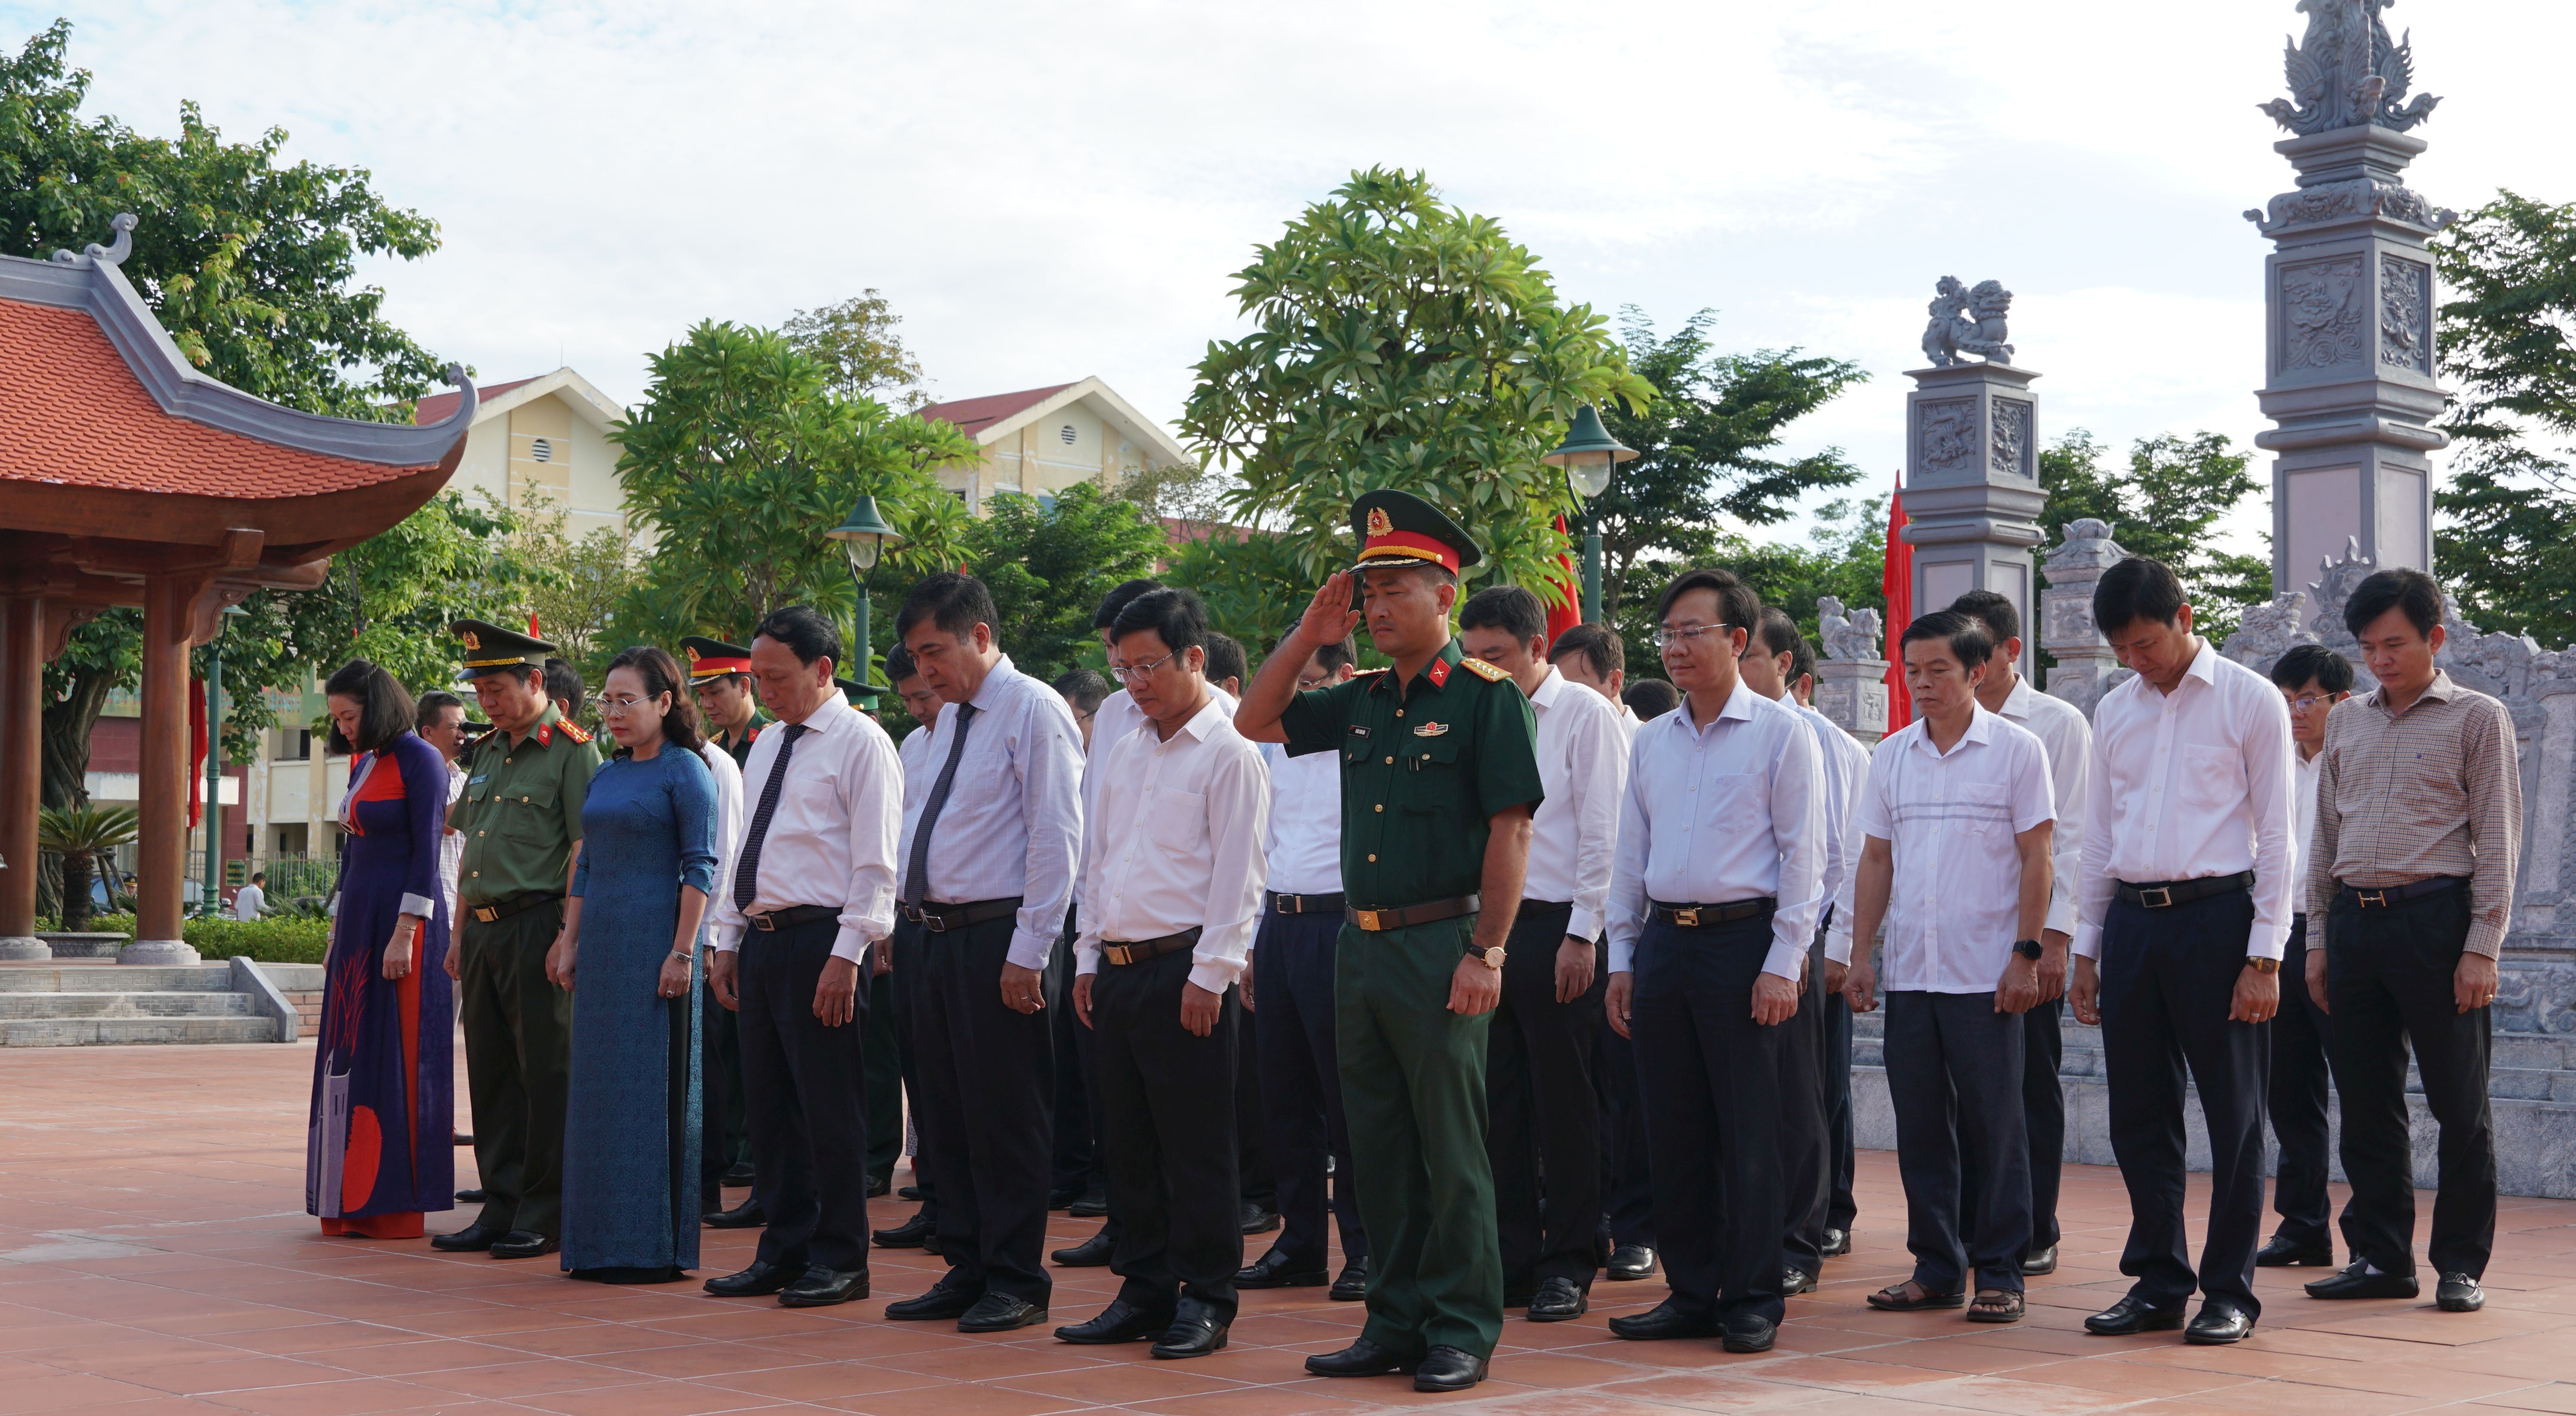 dành một phút mặc niệm tưởng nhớ công ơn của Chủ tịch Hồ Chí Minh - lãnh tụ vĩ đại trọn đời hy sinh cho đất nước, hạnh phúc của nhân dân và các Anh hùng, liệt sỹ đã hy sinh vì sự nghiệp giải phóng dân tộc, thống nhất đất nước.